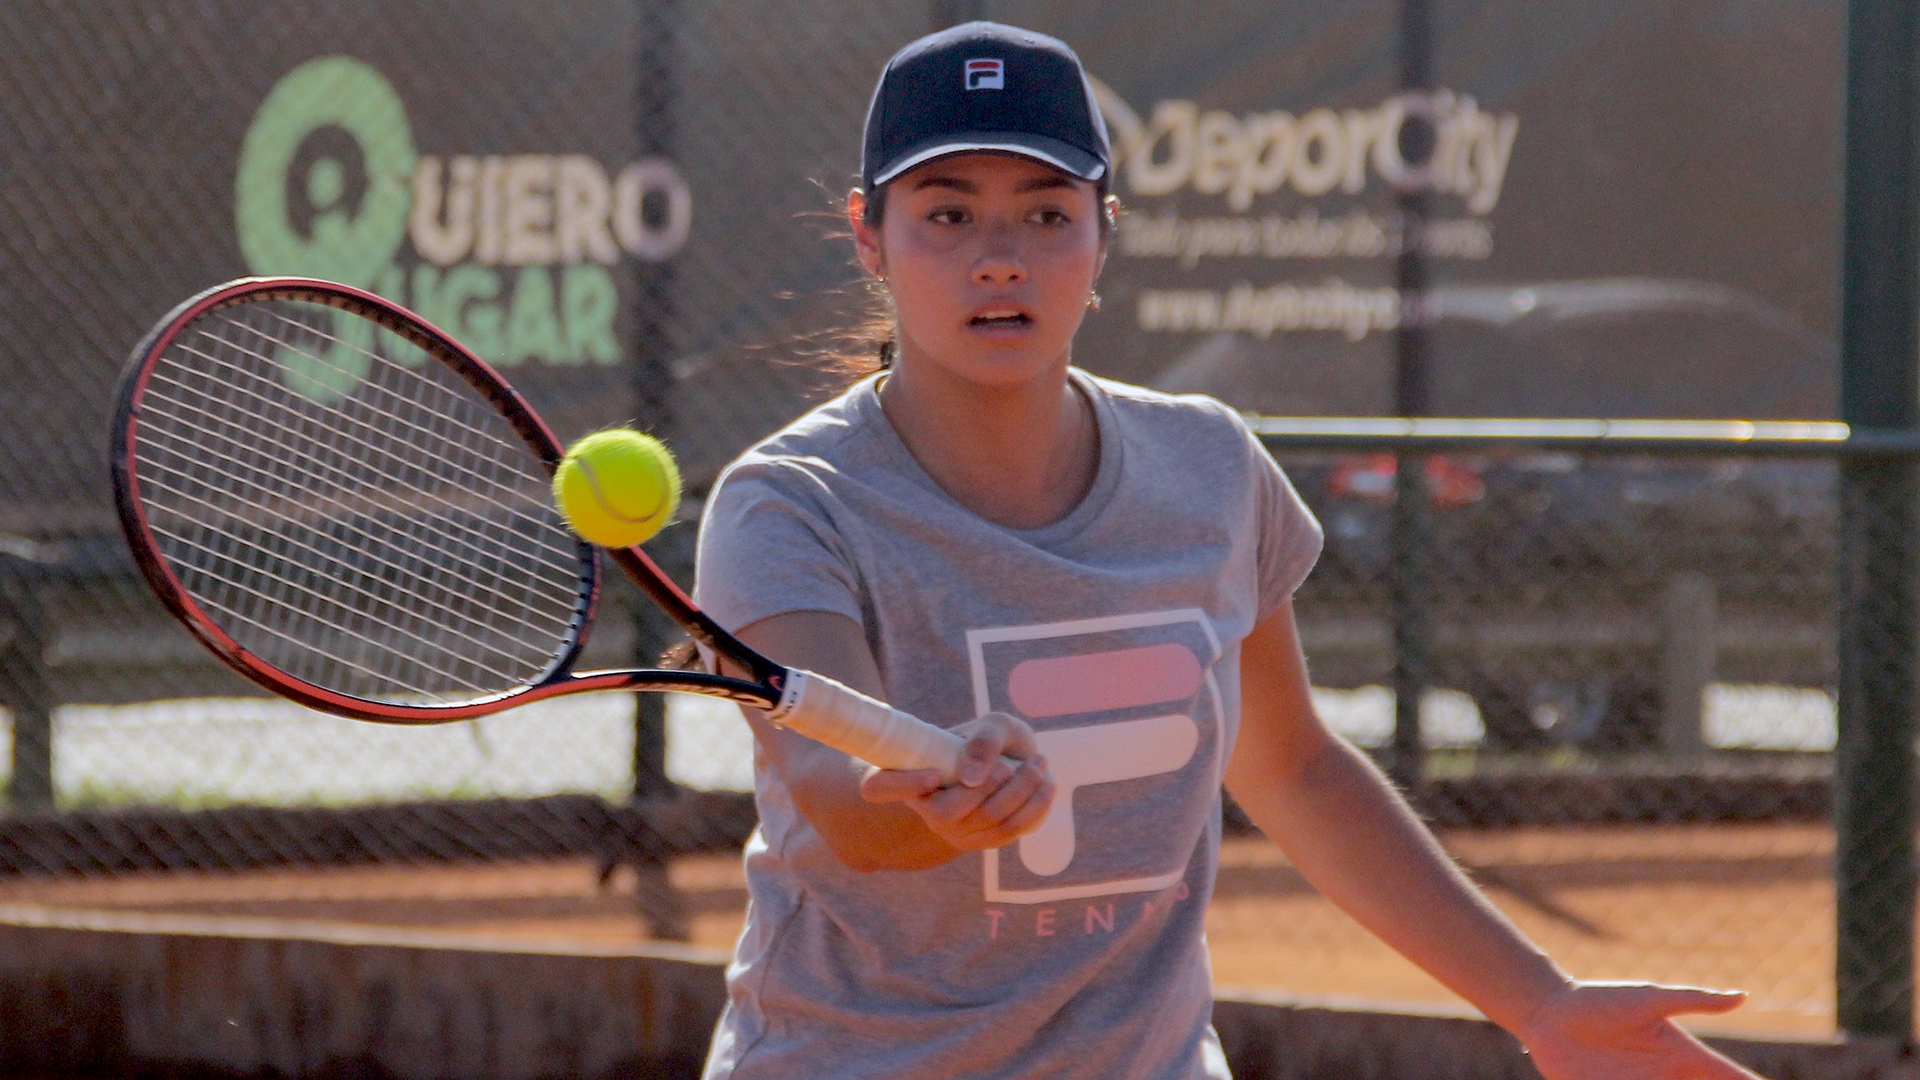 El plan de la hija de Guillermo Vilas para forjar su propio camino en el tenis: la sorpresa que recibió en Argentina